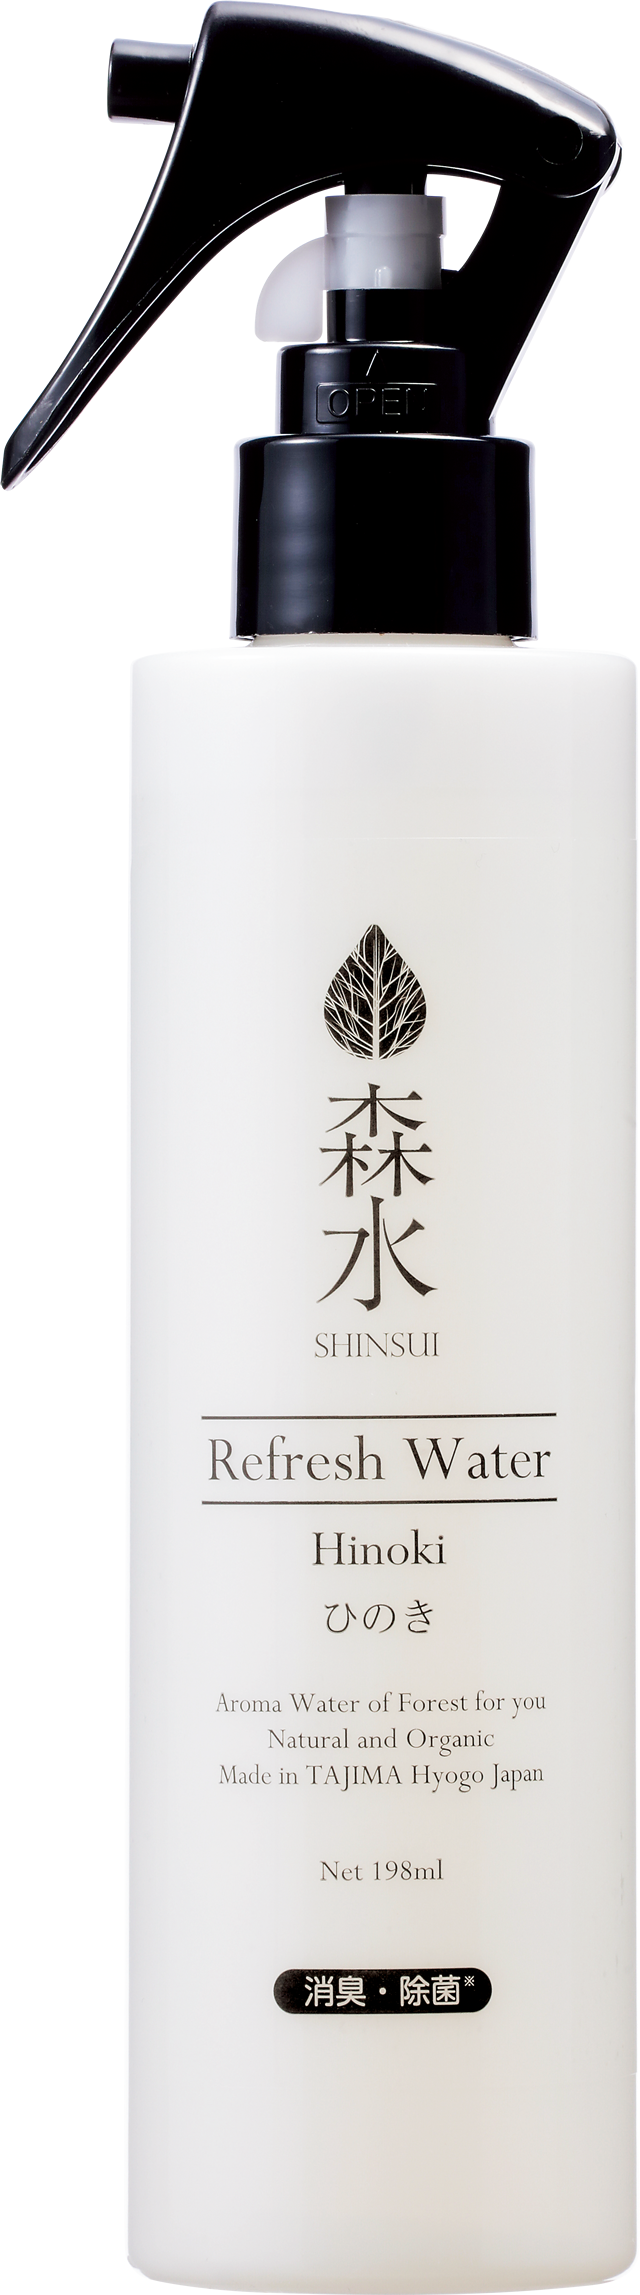 Refresh Water Hinoki